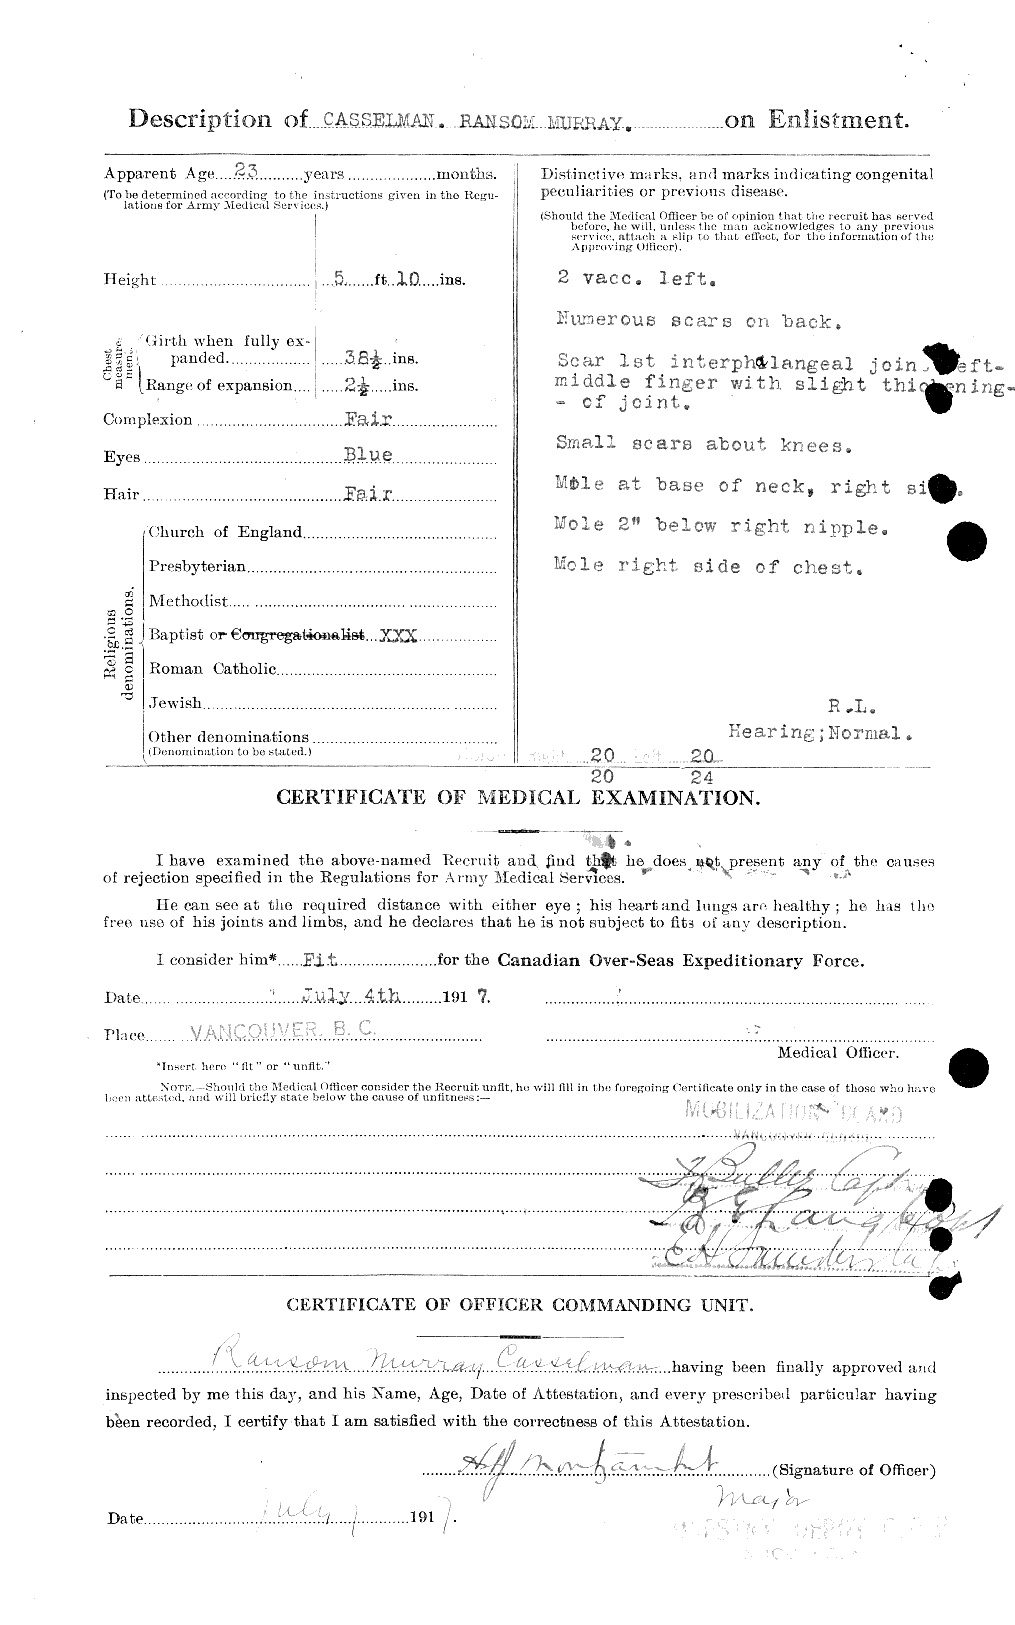 Dossiers du Personnel de la Première Guerre mondiale - CEC 006322b